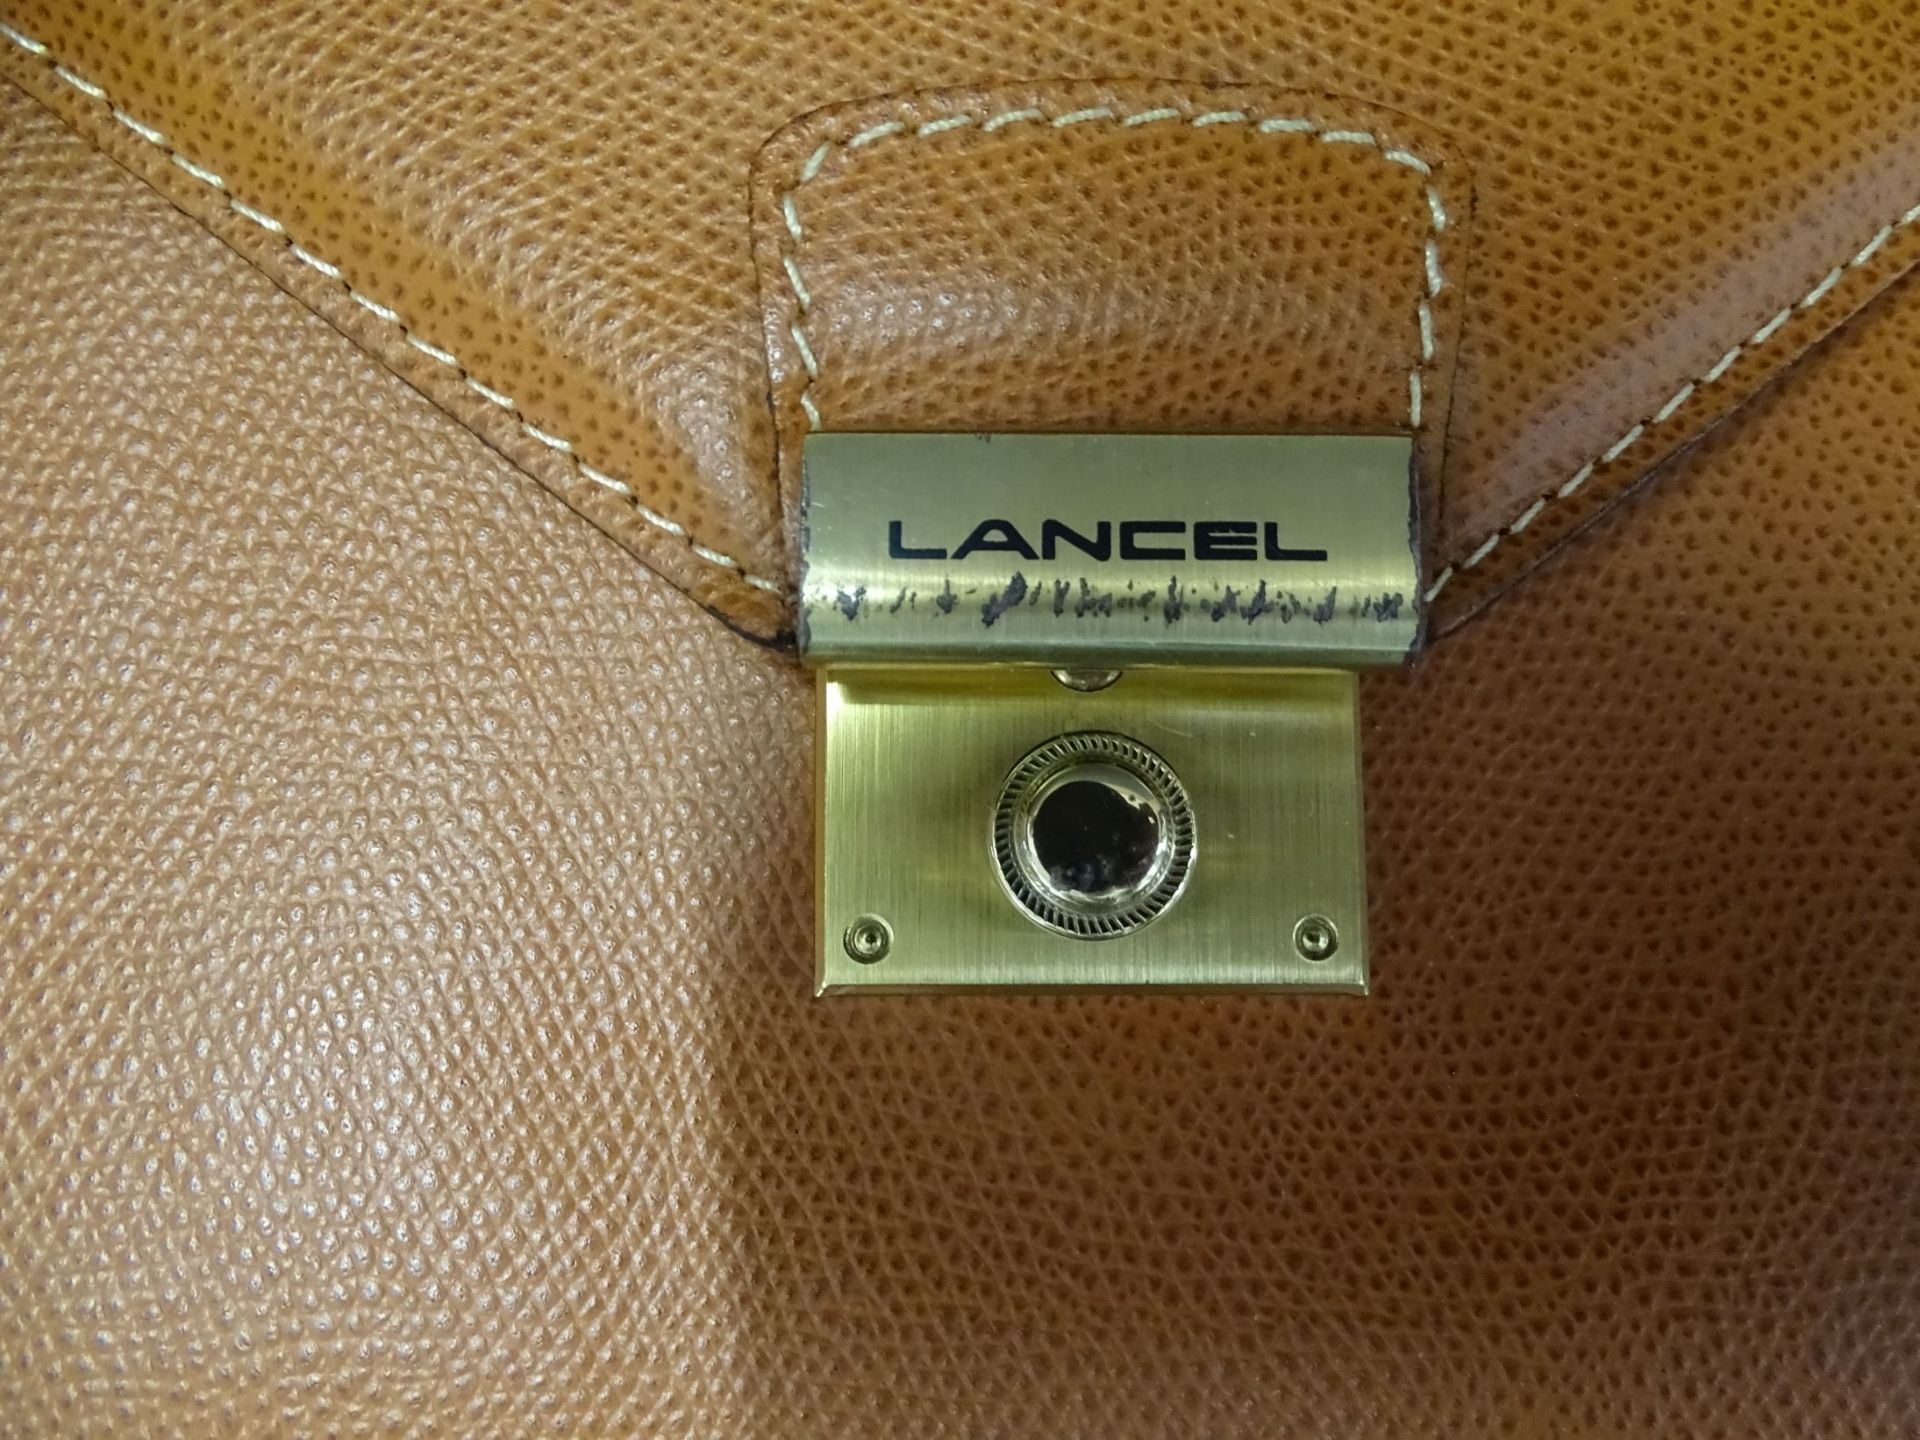 Leder-Handtasche "Lancel"gut erhalten mit Lagerungsschäde - Bild 7 aus 8